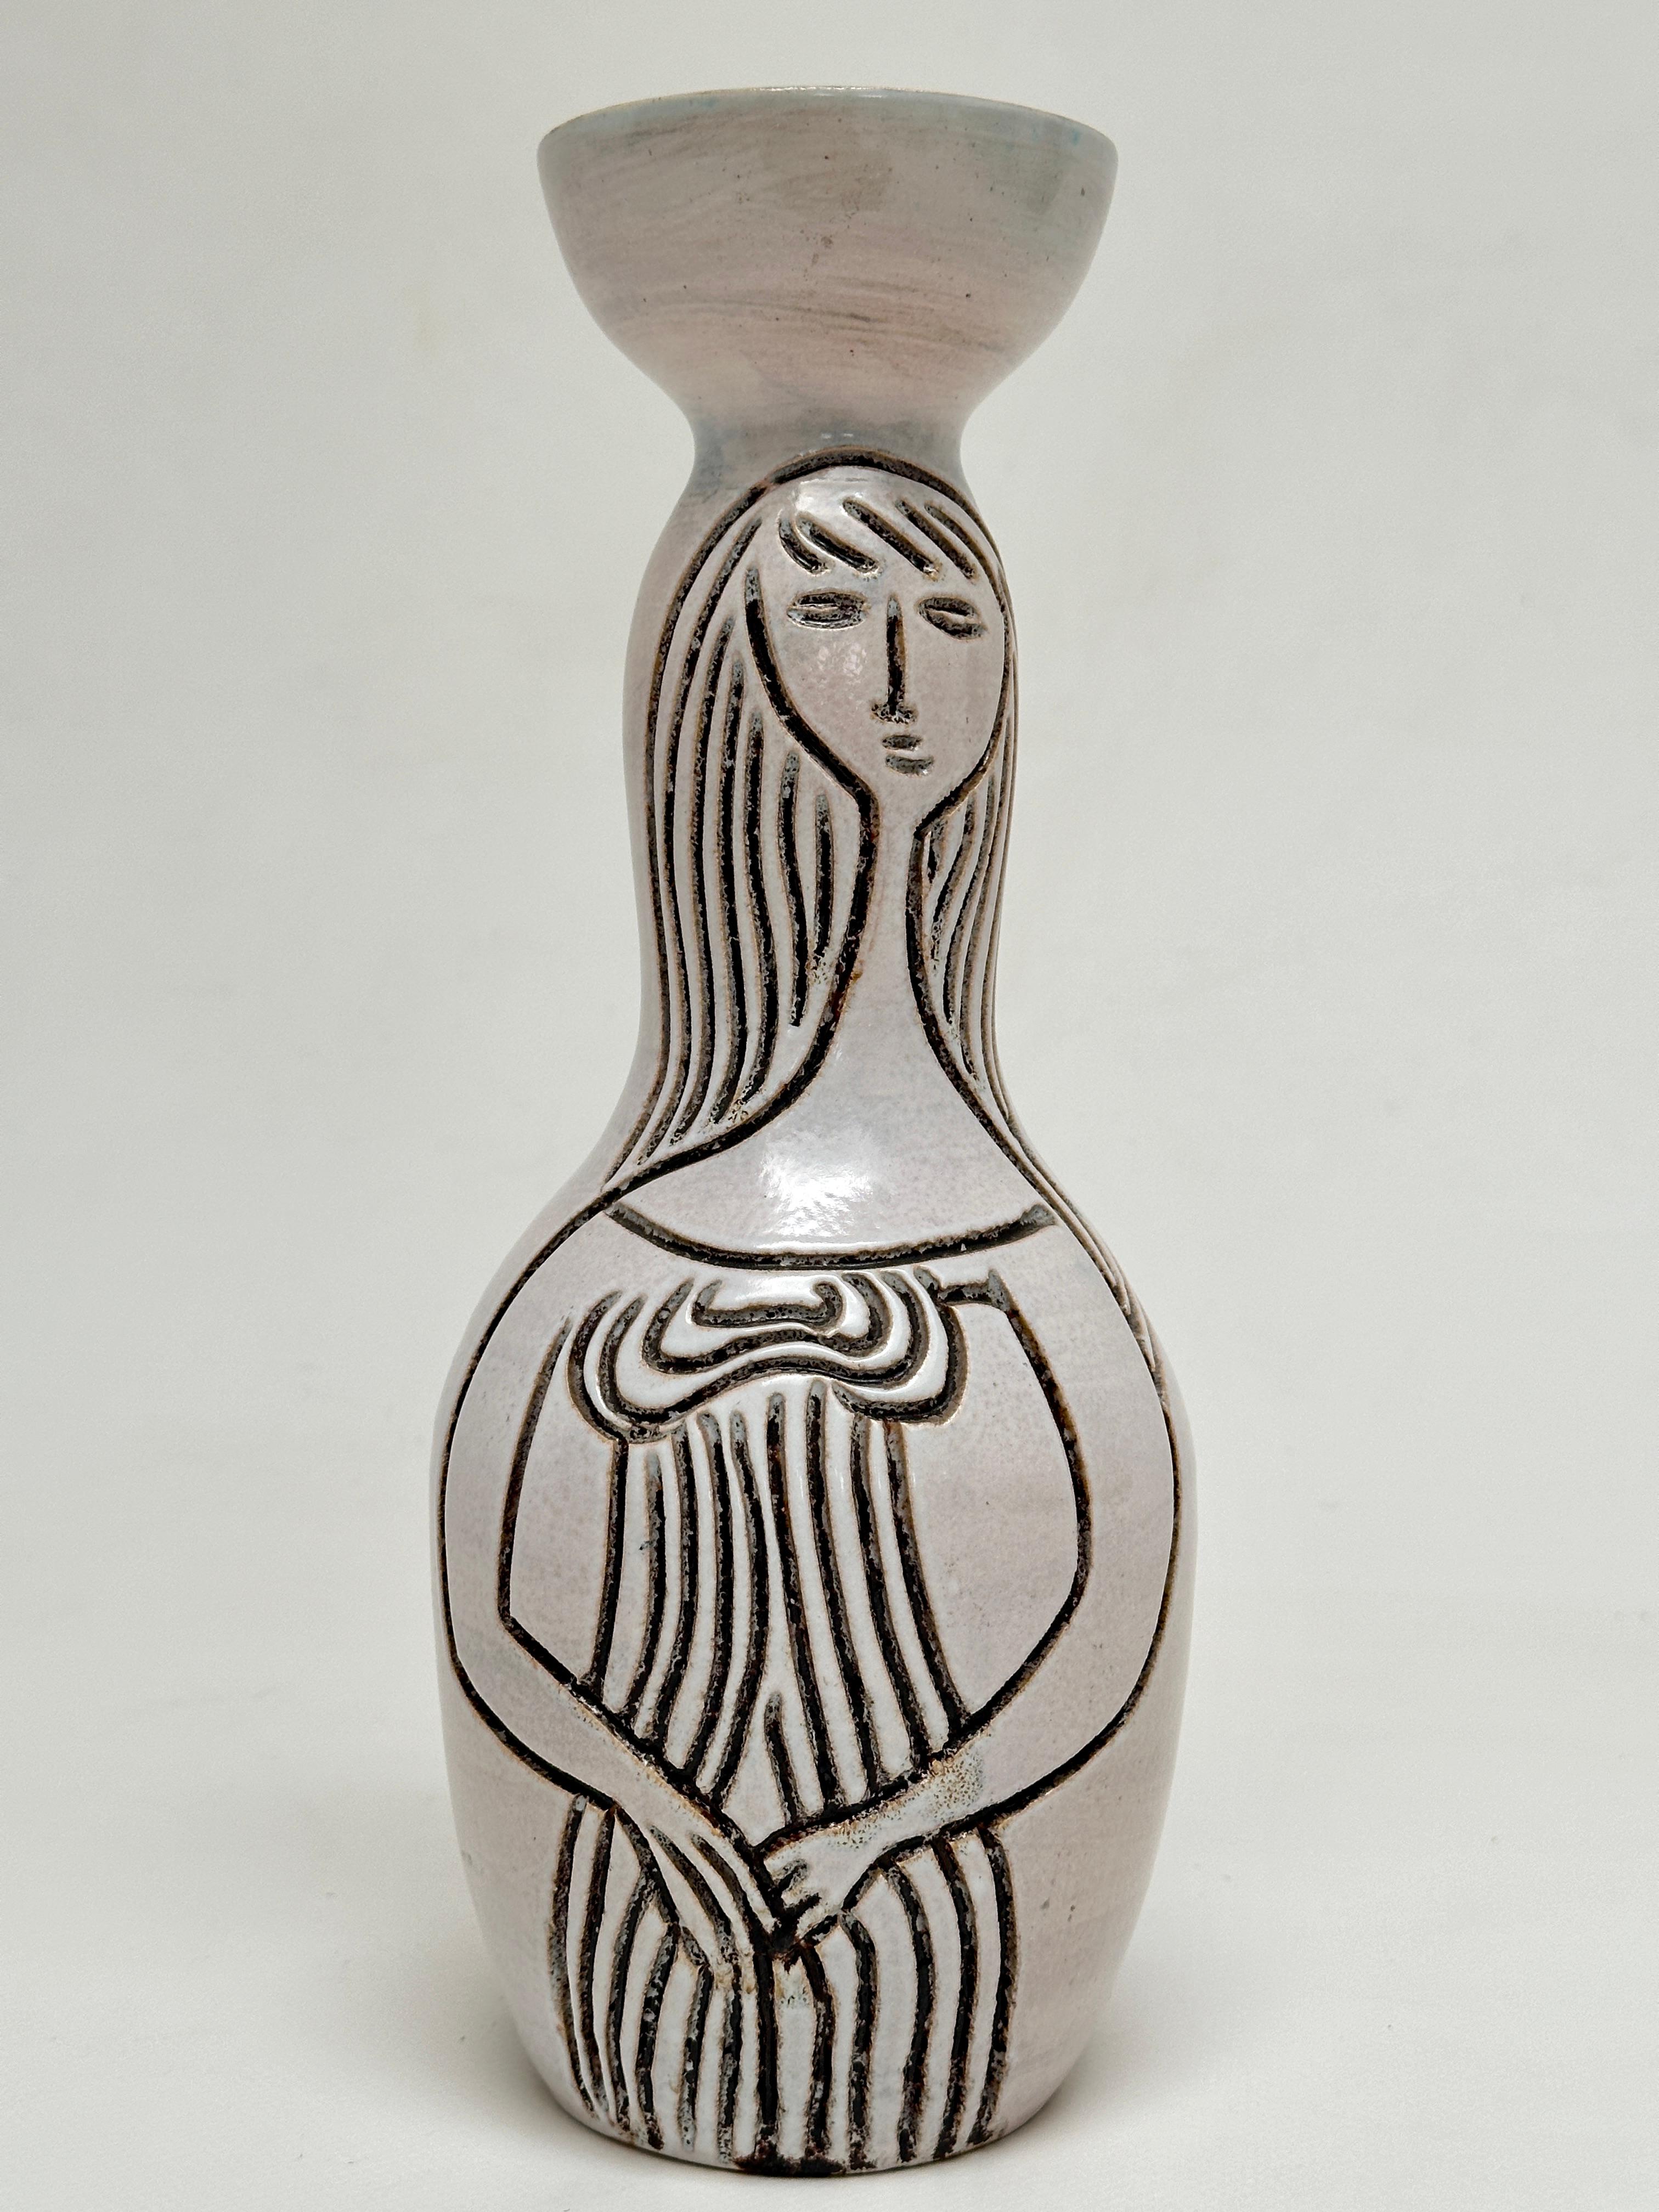 Biomorphe Vase mit geritzten Mustern von 2 weiblichen Silhouetten auf glänzend milchig-weißer Emaille.


Accolay bezeichnet sowohl den Ort (Südburgund) als auch den Namen einer Gemeinschaft von Keramikern, deren rege Tätigkeit auf fast 50 Jahre